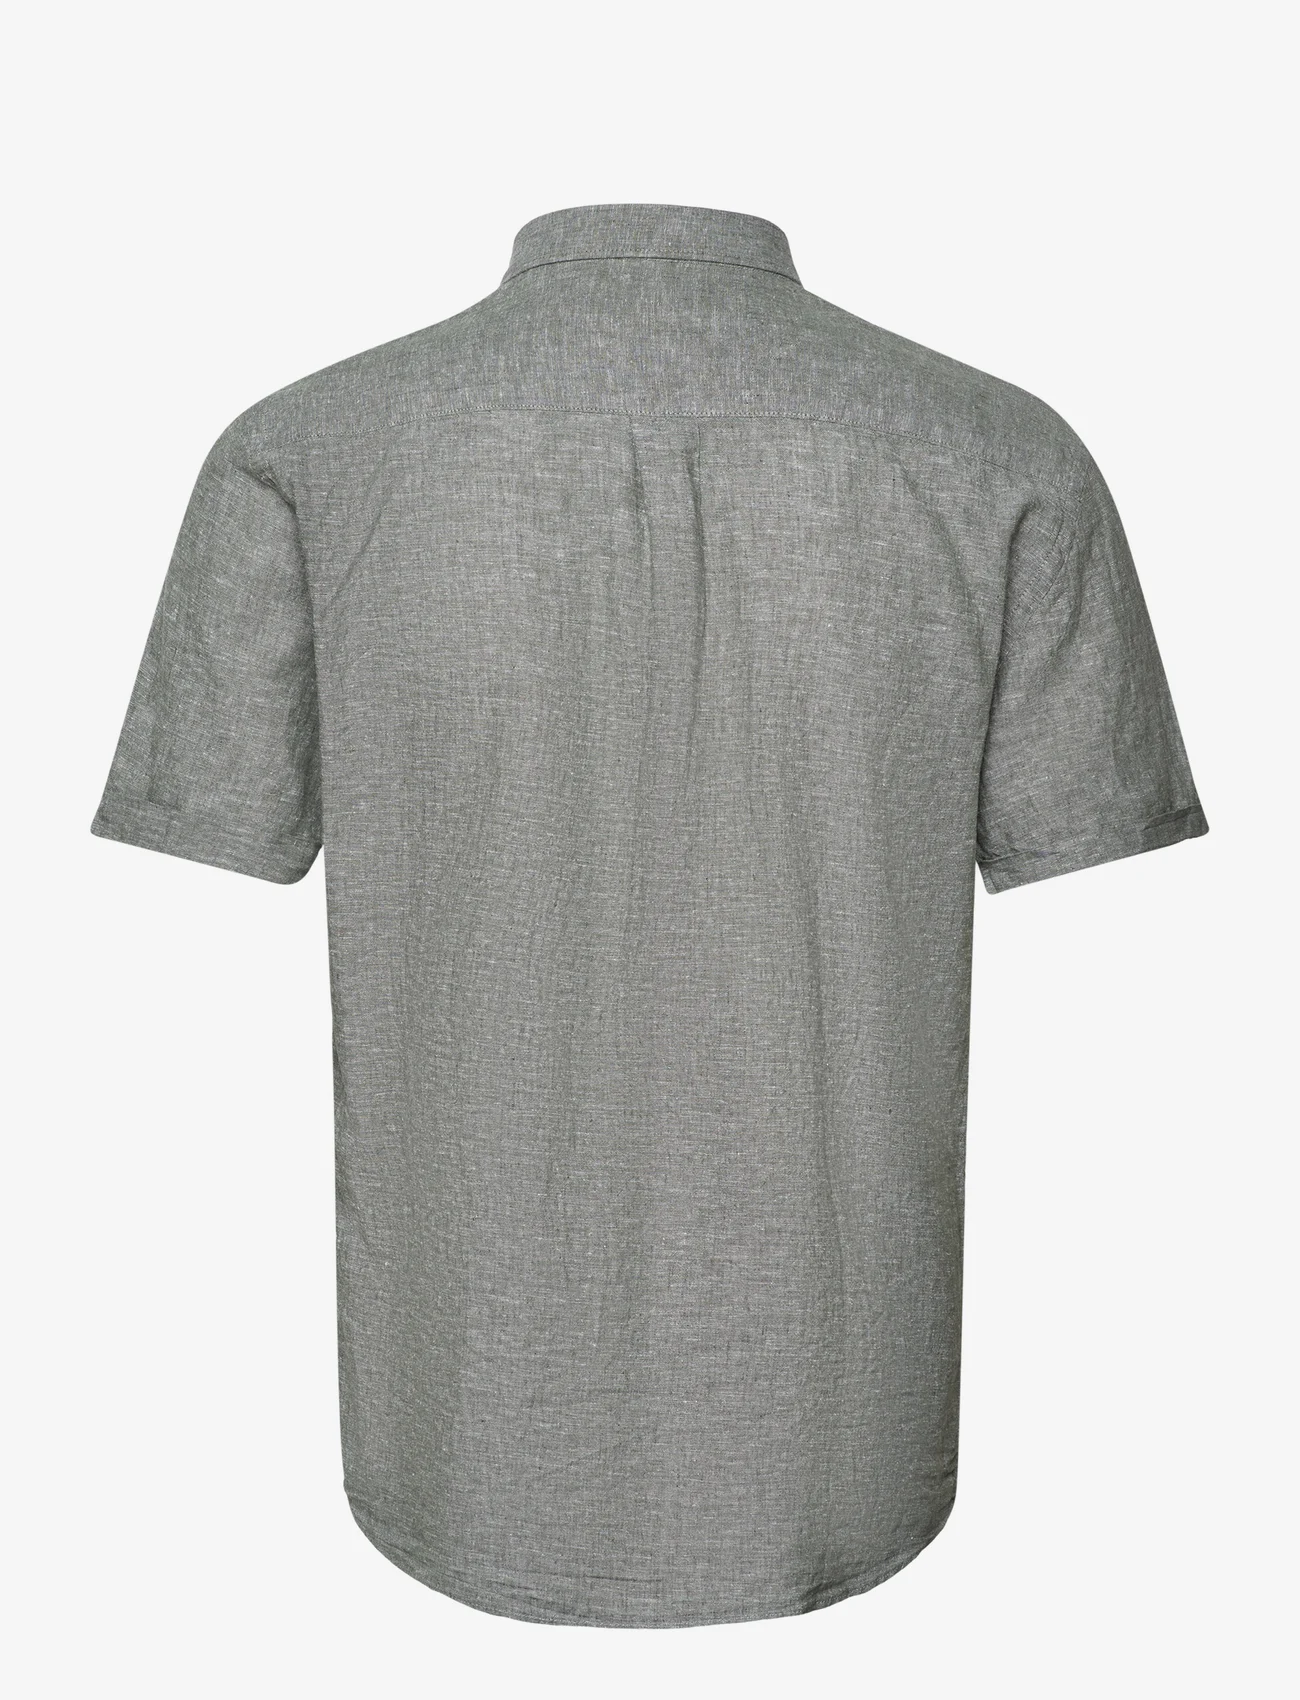 Lindbergh - Cotton/linen shirt S/S - linskjorter - army - 1